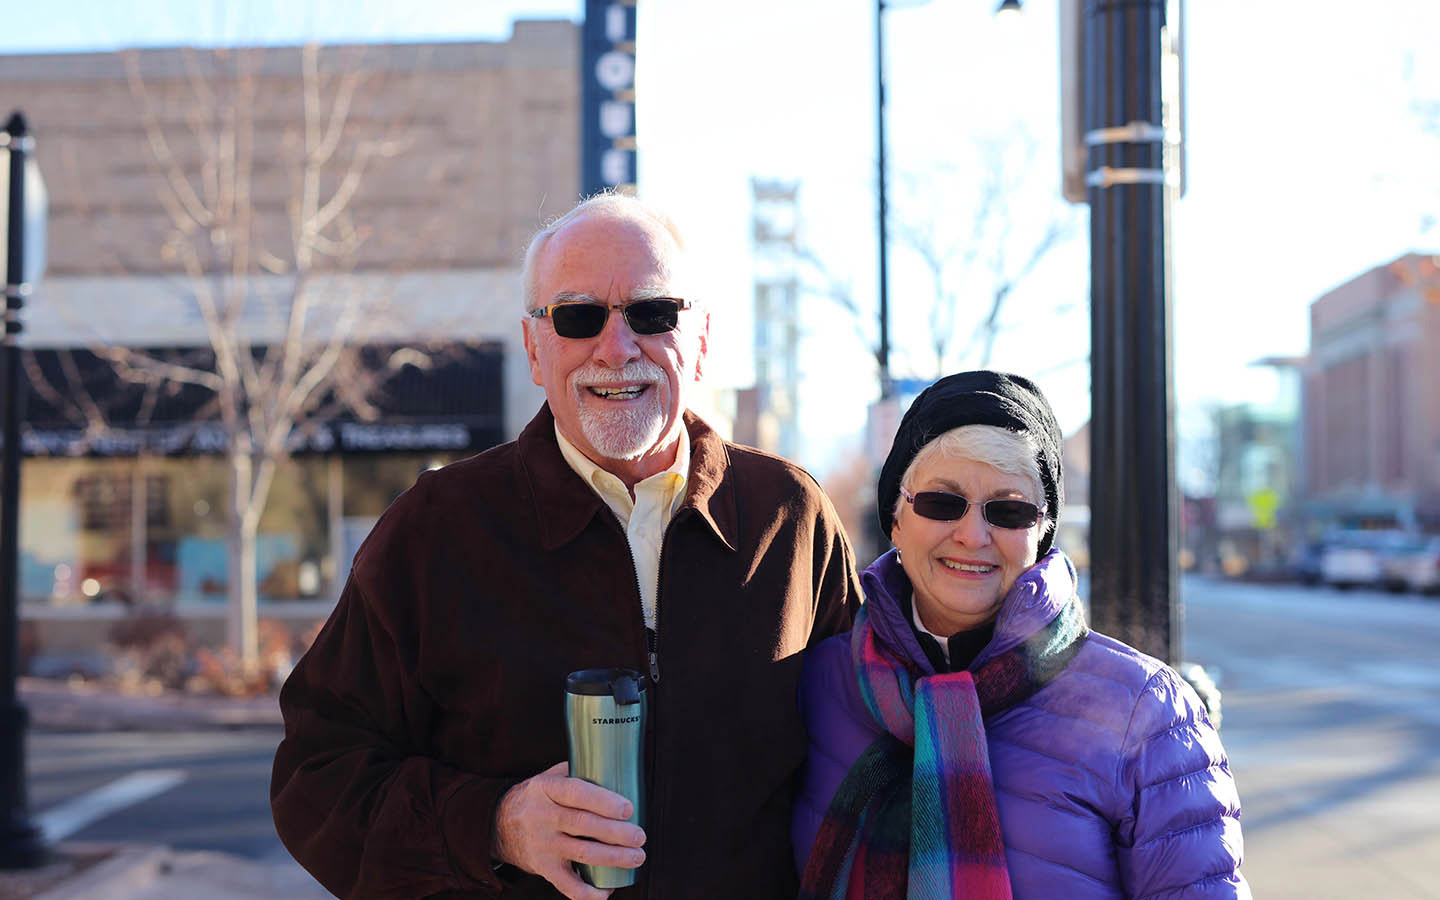 Tom, porteur d’un implant Cochlear, et sa femme Brenda posent pour une photo dans la rue